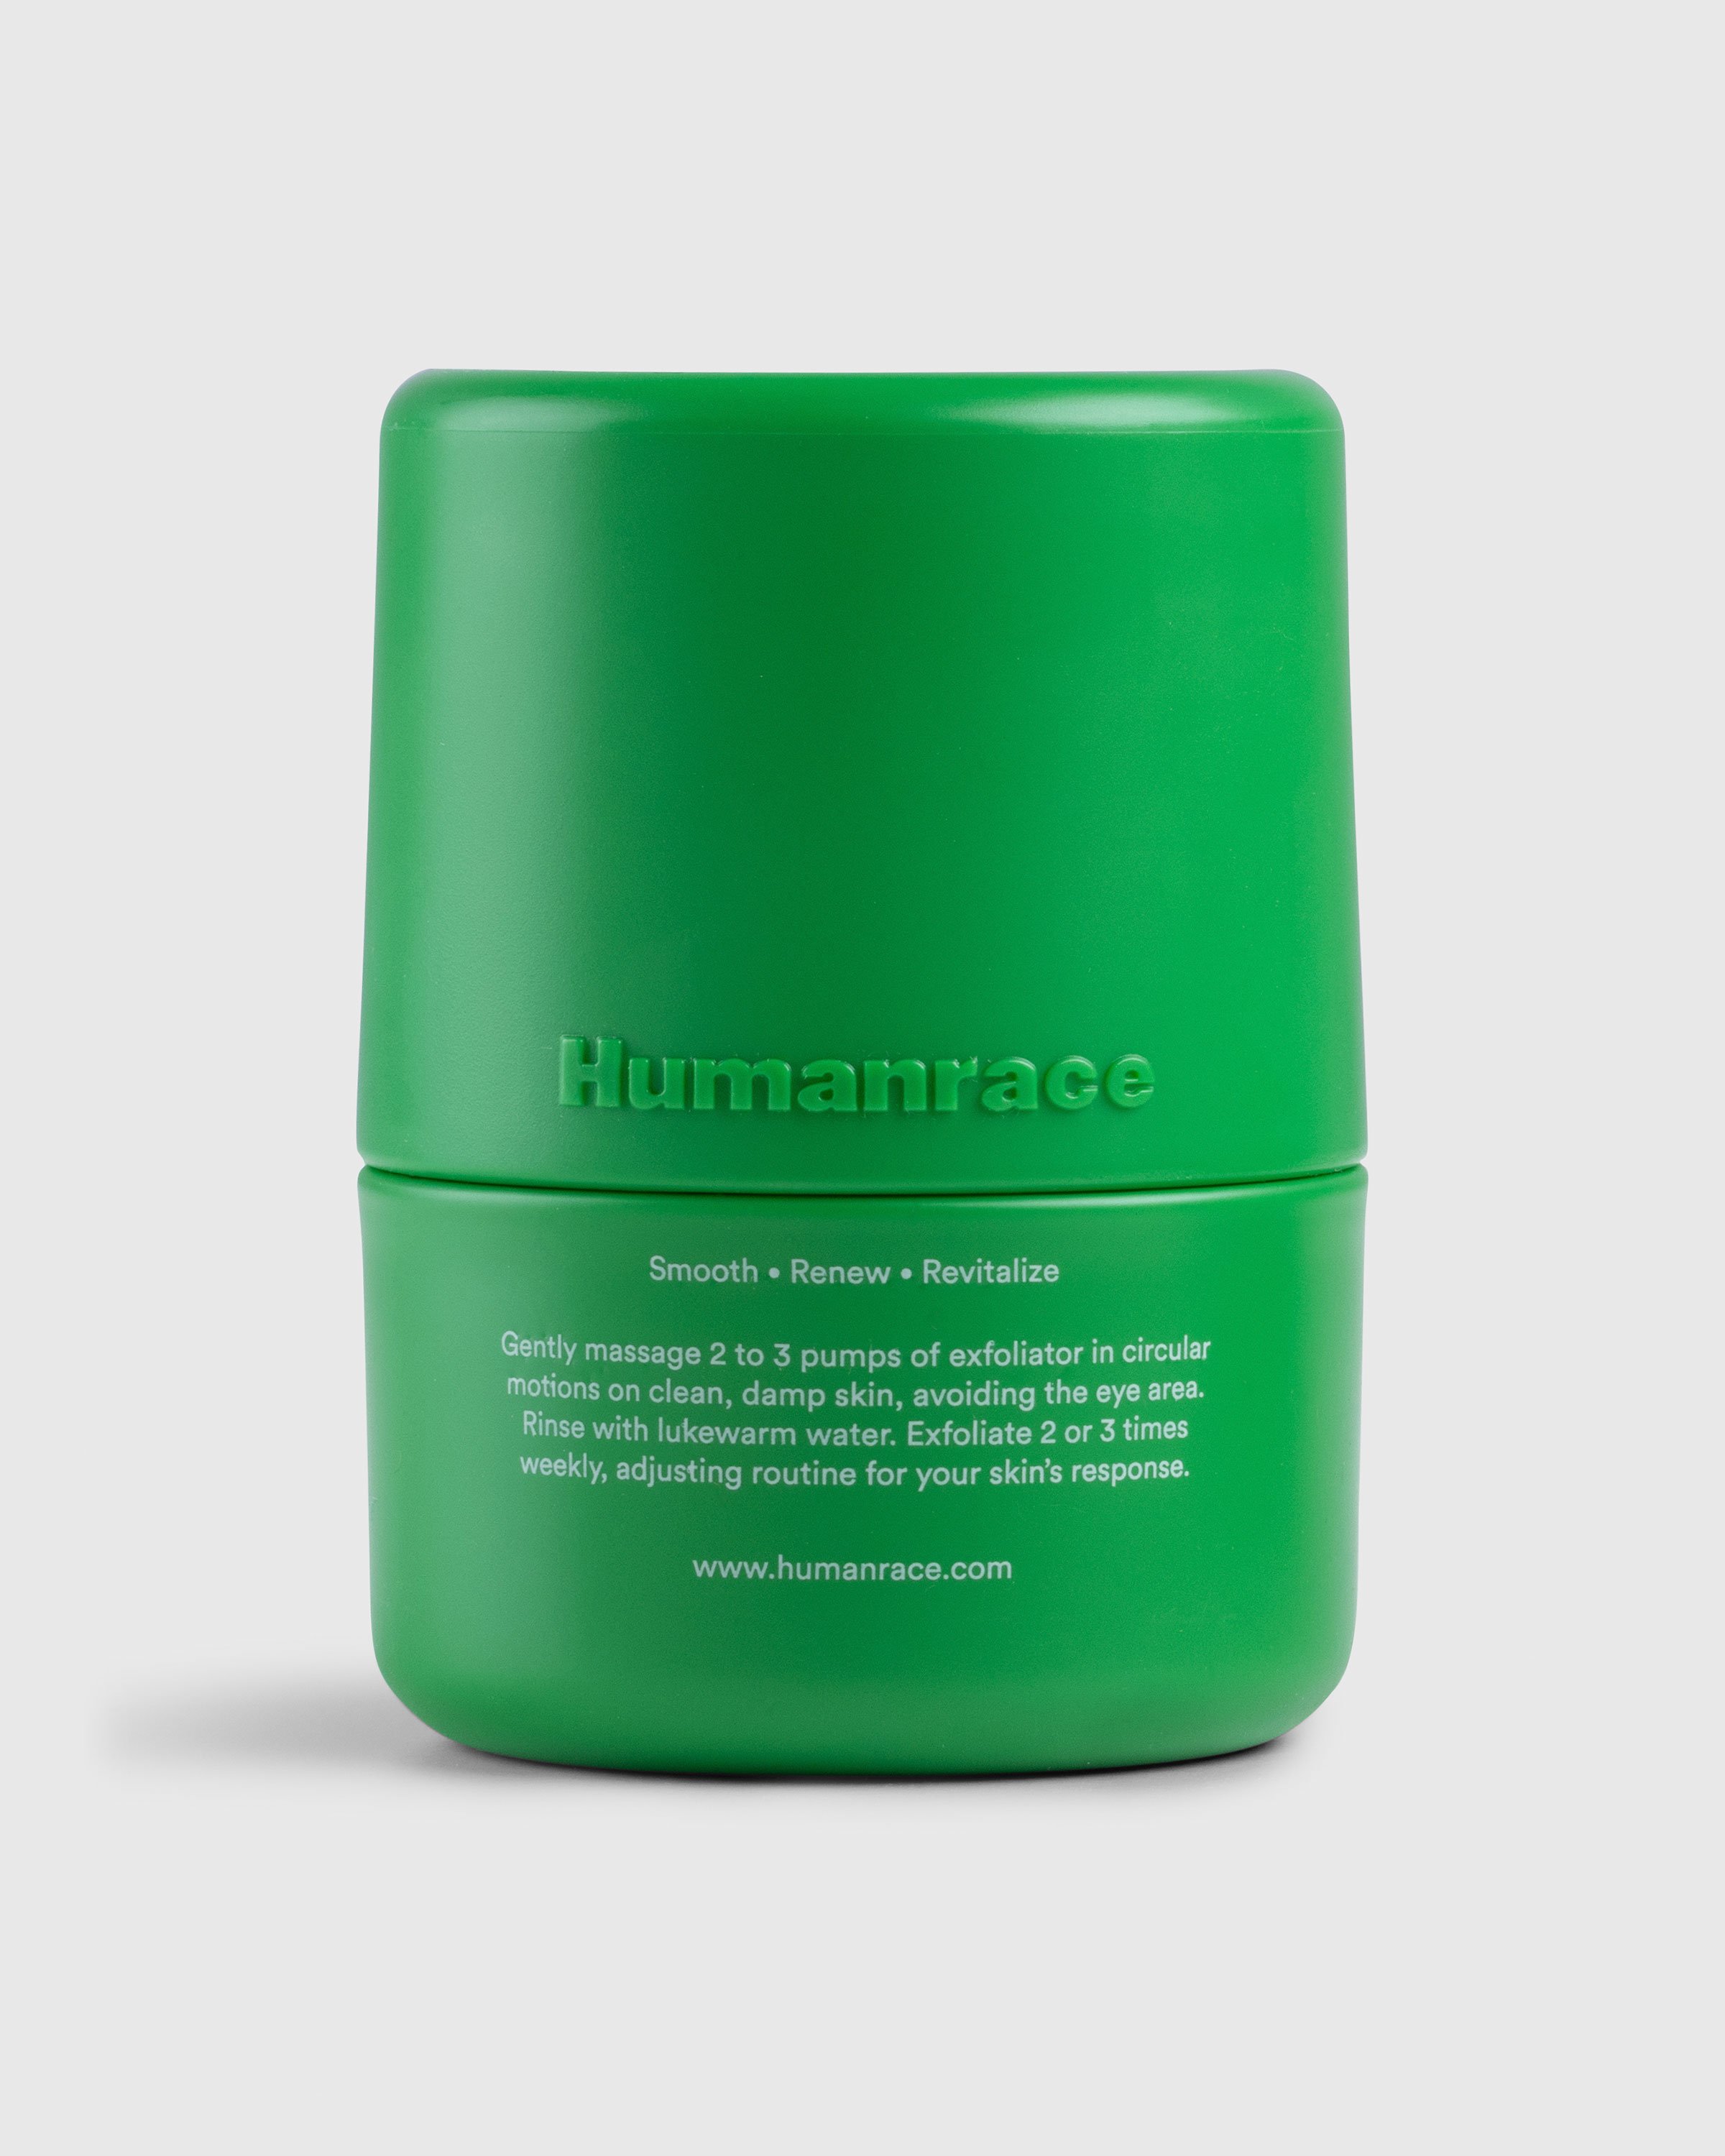 Humanrace - Lotus Enzyme Exfoliator - Lifestyle - Green - Image 1